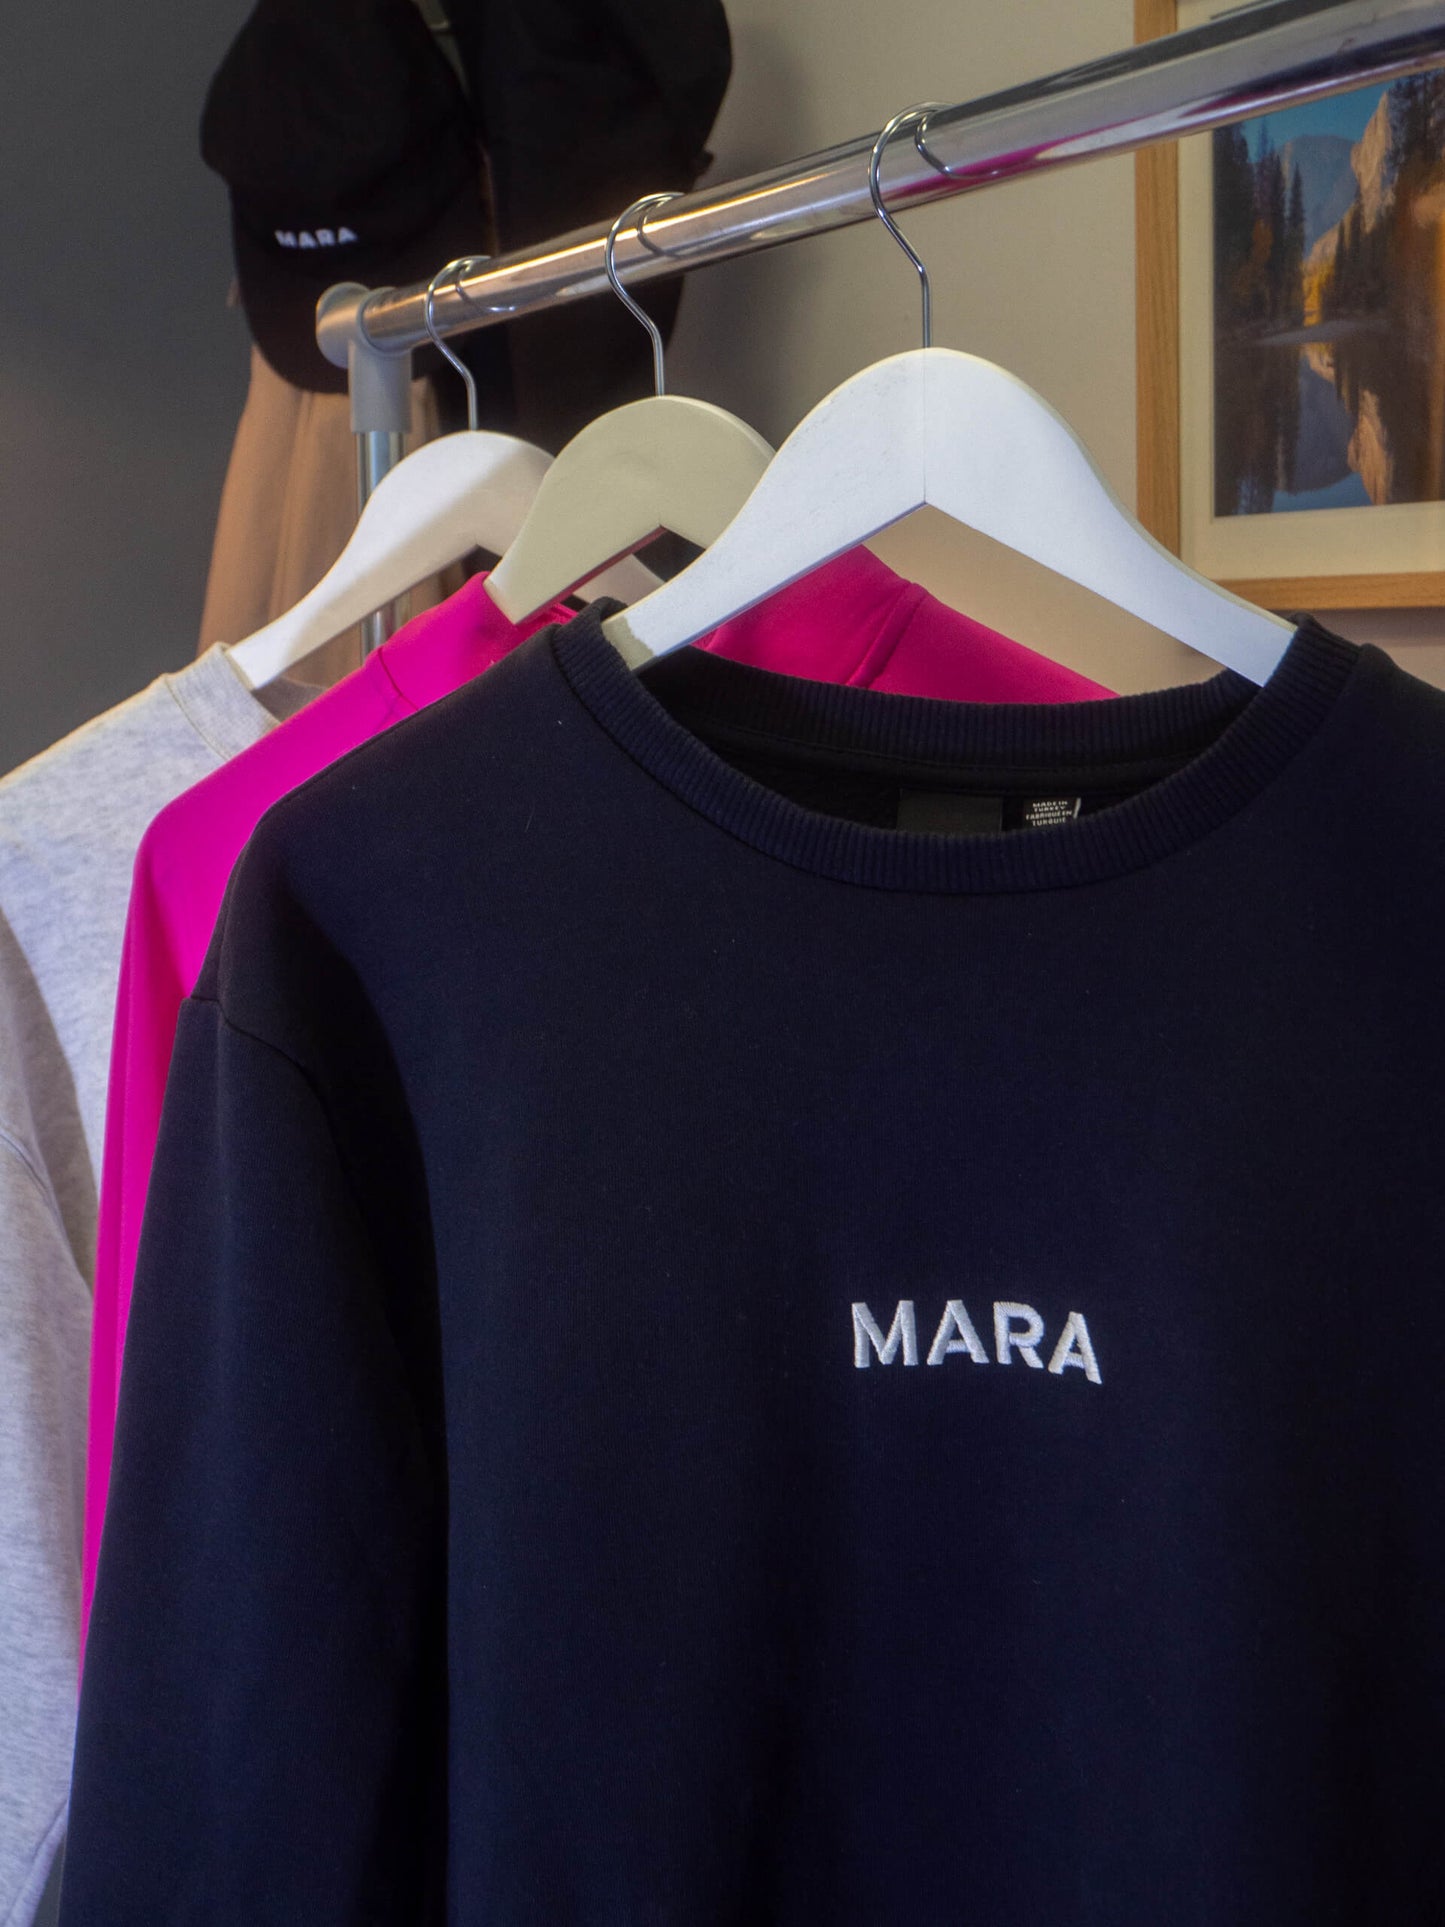 MARA Long-sleeve Sweatshirt